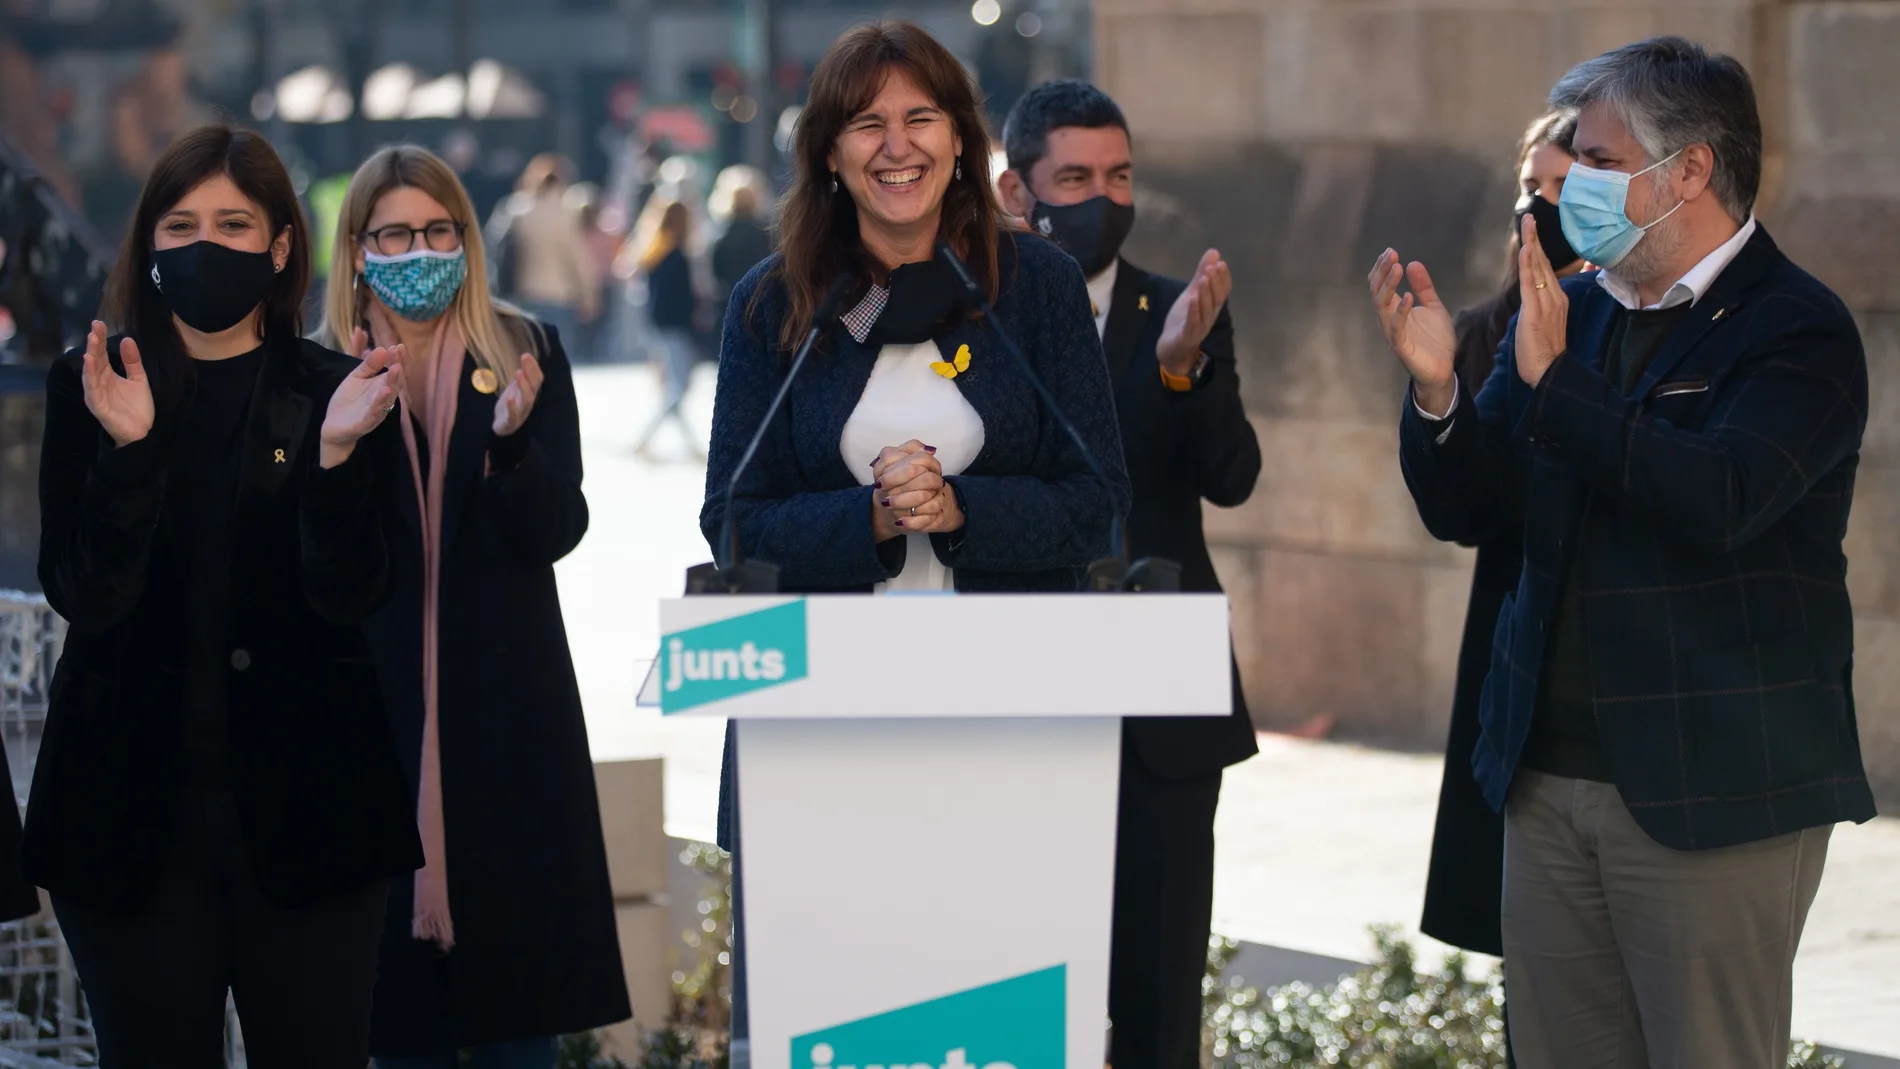 La cabeza de lista por Barcelona, Laura Borràs (c), junto a sus compañeros de Girona, Gemma Geis (i), y por Tarragona, Albert Batet (d), durante el acto de presentación de los cabezas de lista del partido para las elecciones catalanas del 14F.